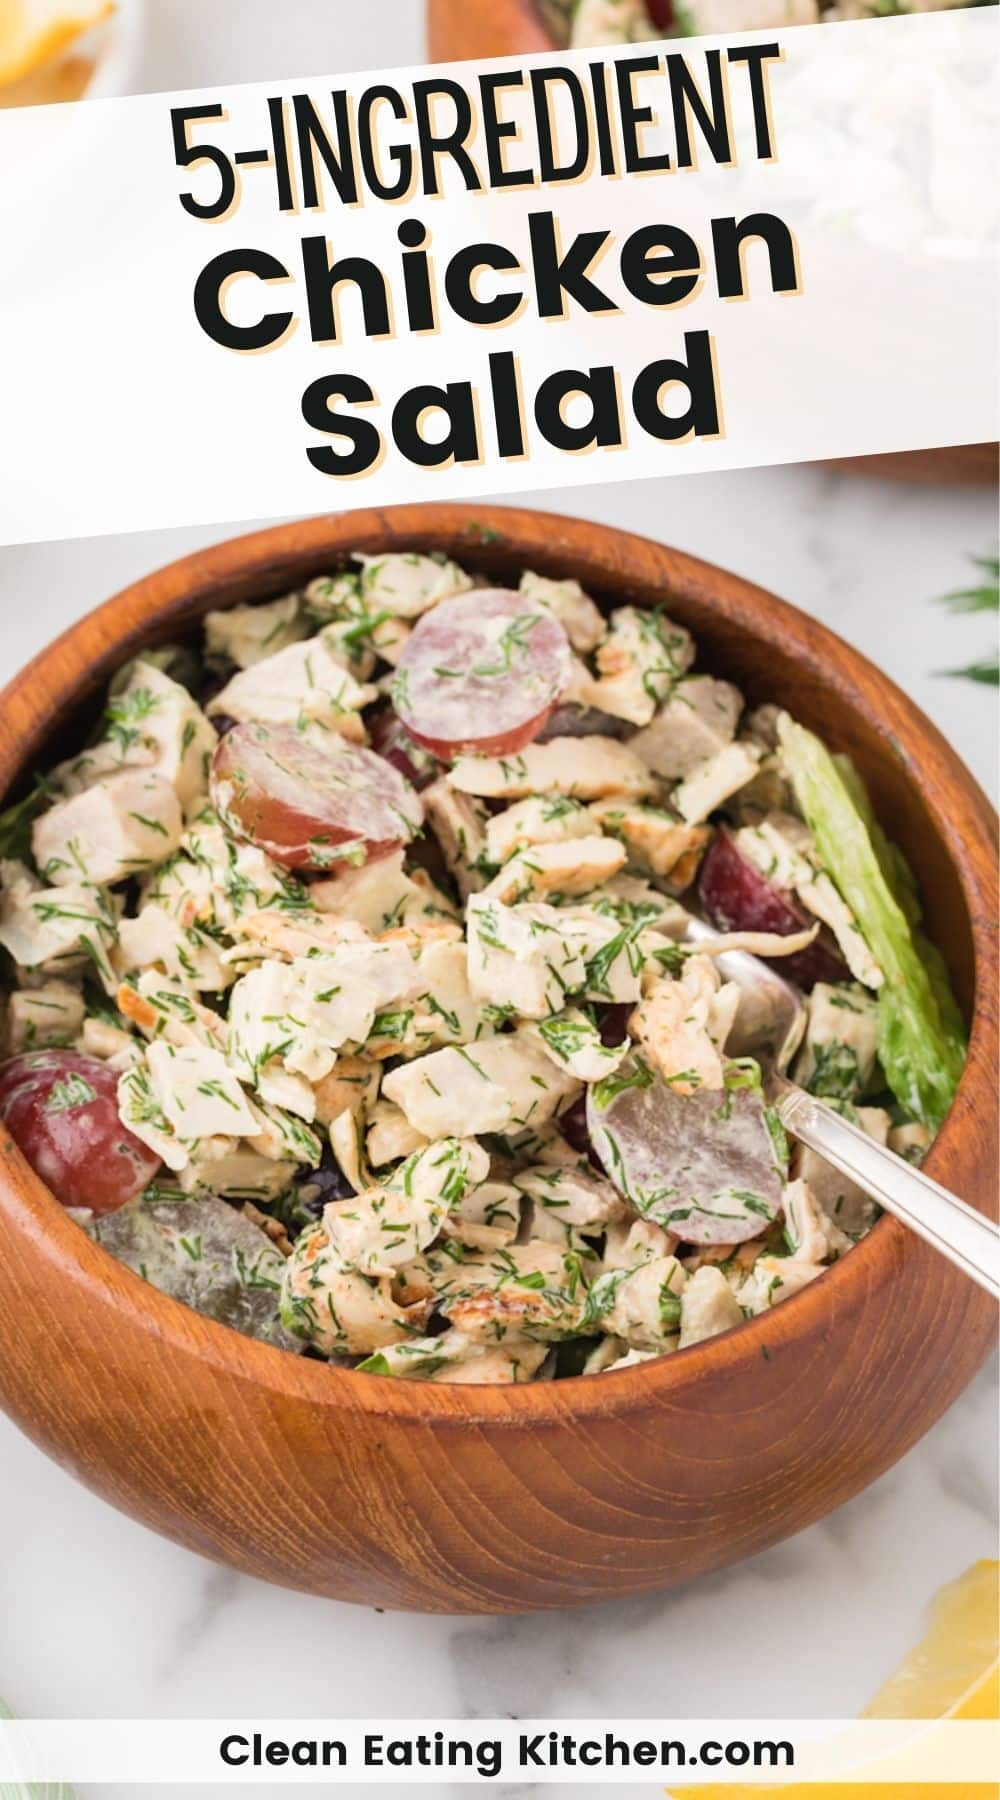 5-Ingredient Chicken Salad Recipe - Clean Eating Kitchen